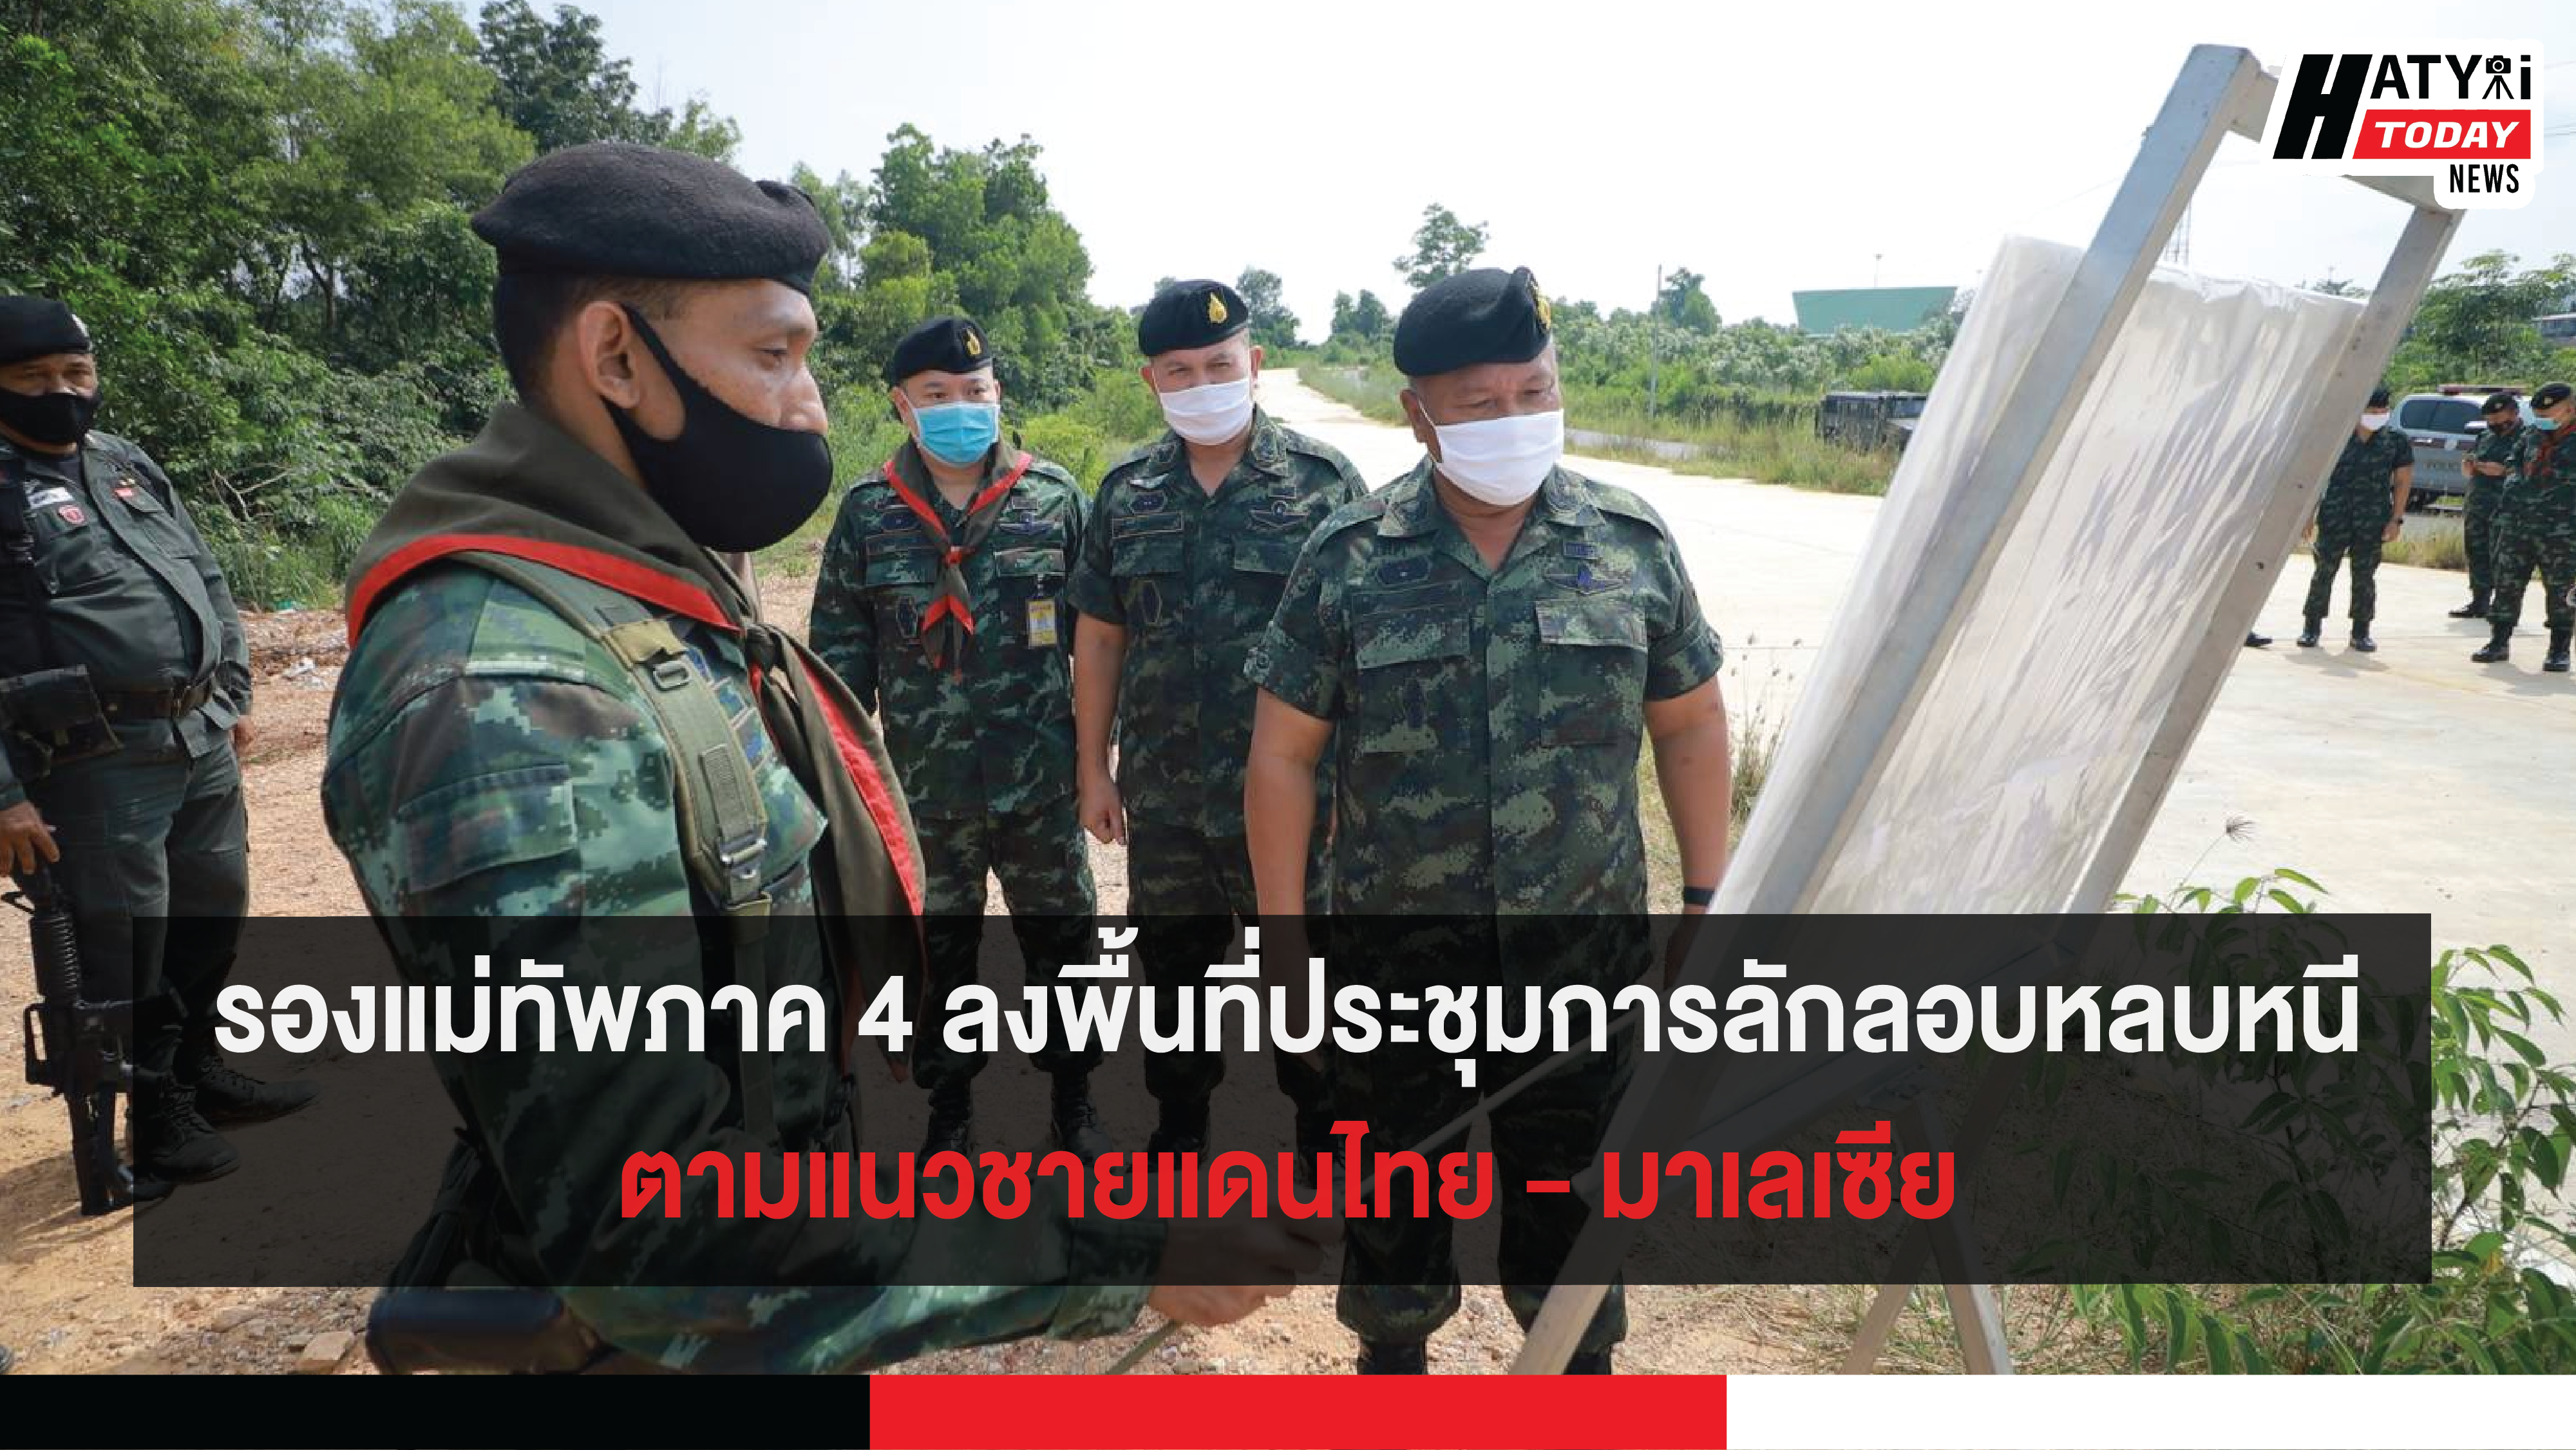 รองแม่ทัพภาค 4 ลงพื้นที่ประชุมการลักลอบหลบหนี ตามแนวชายแดนไทย – มาเลเซีย